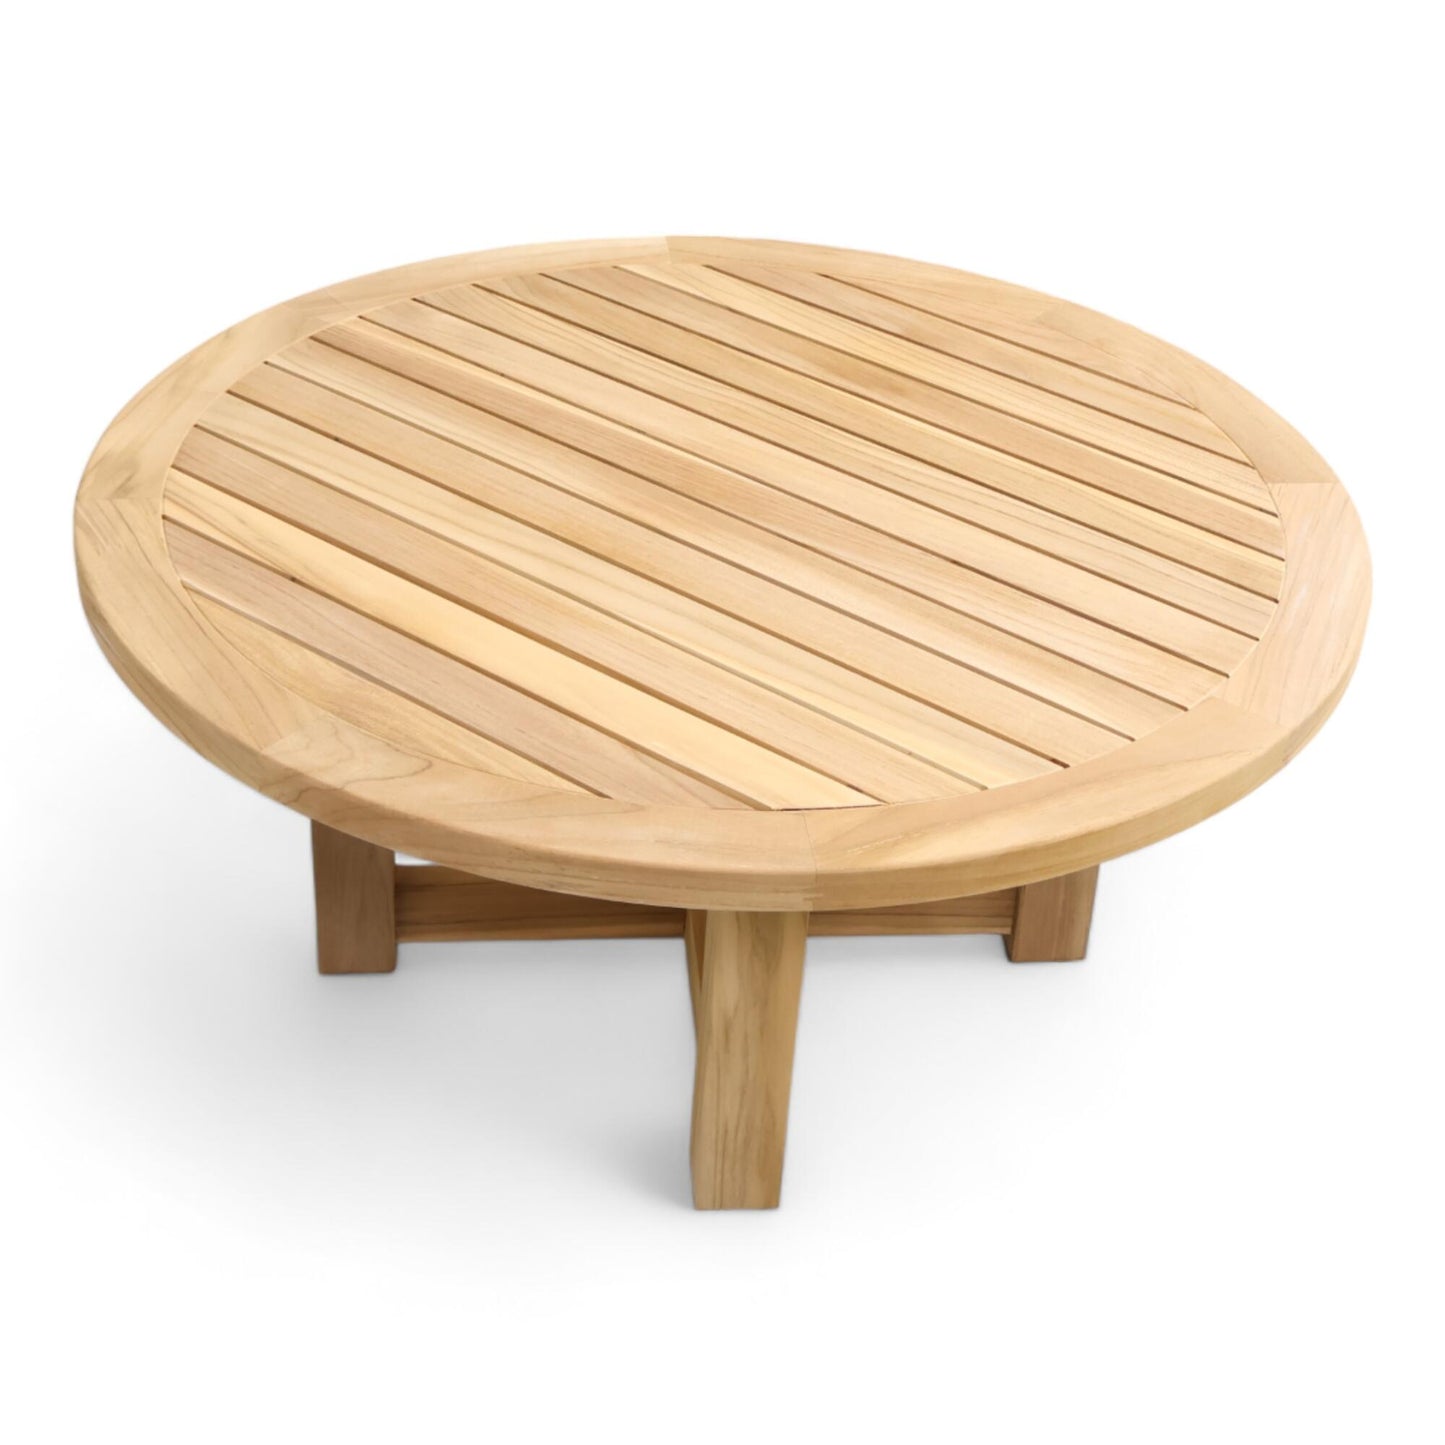 Helt nytt | North Hage sofabord, natural teak wood